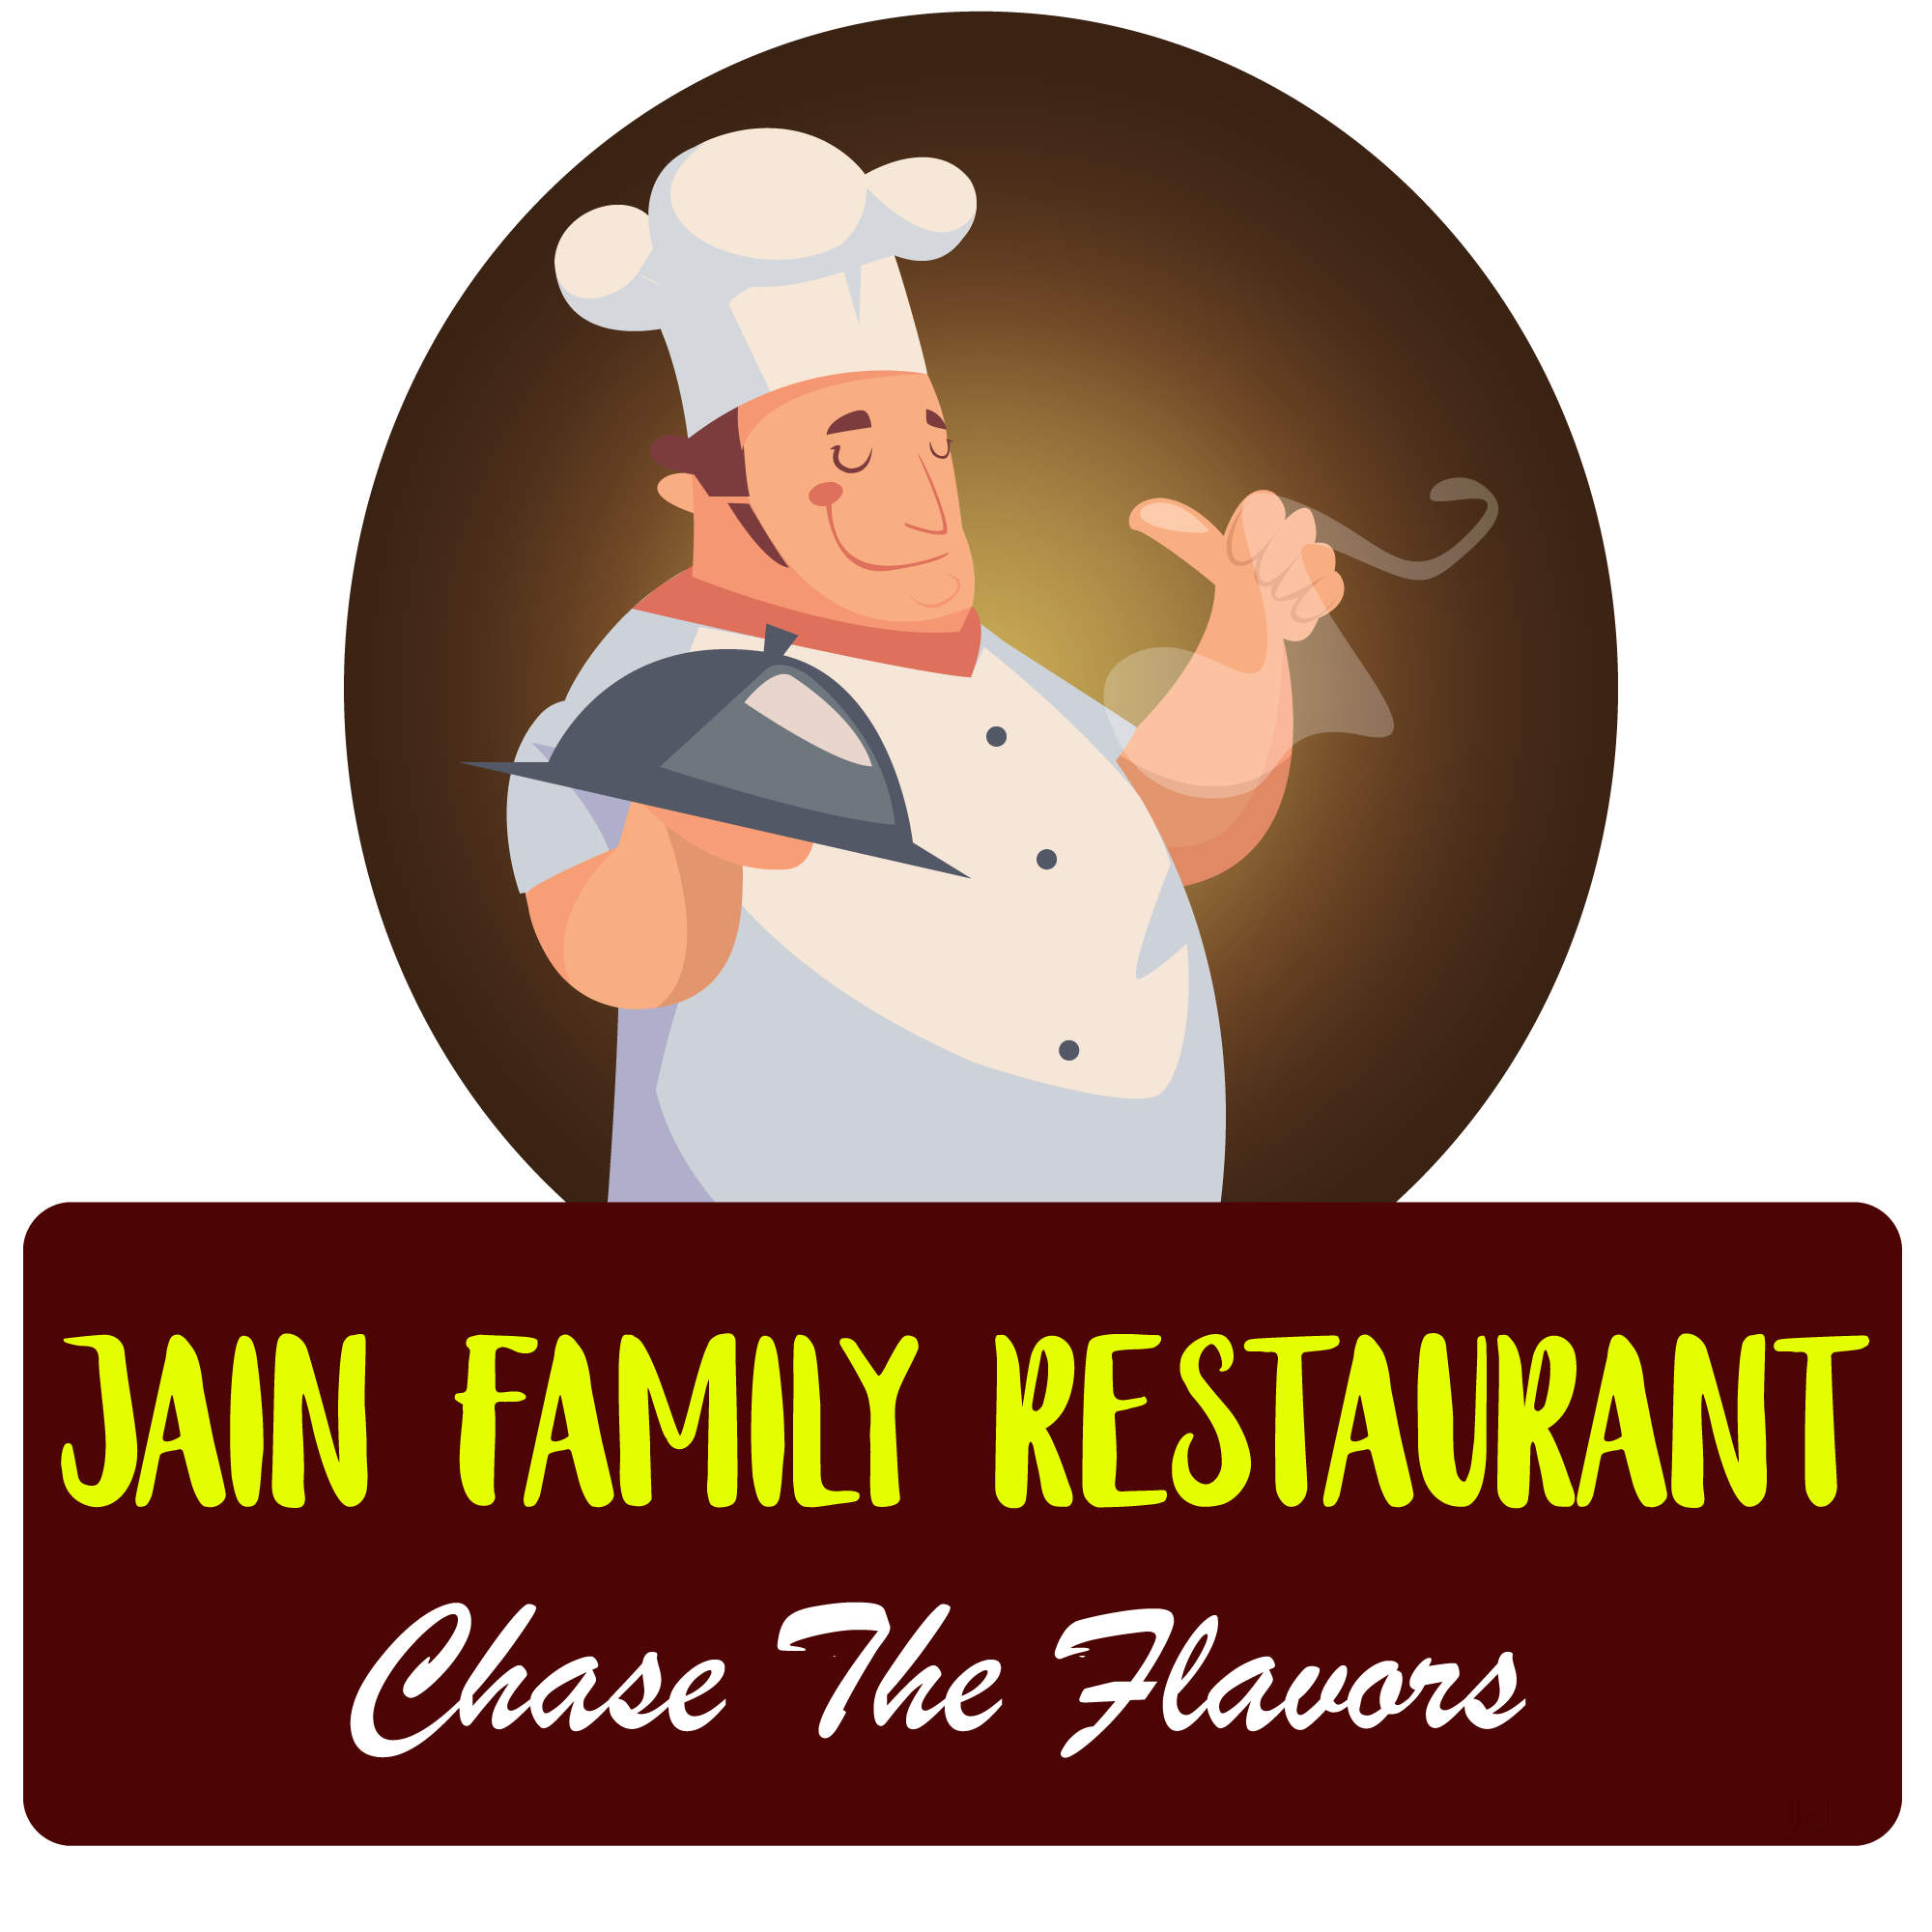 restaurants clipart family restaurant